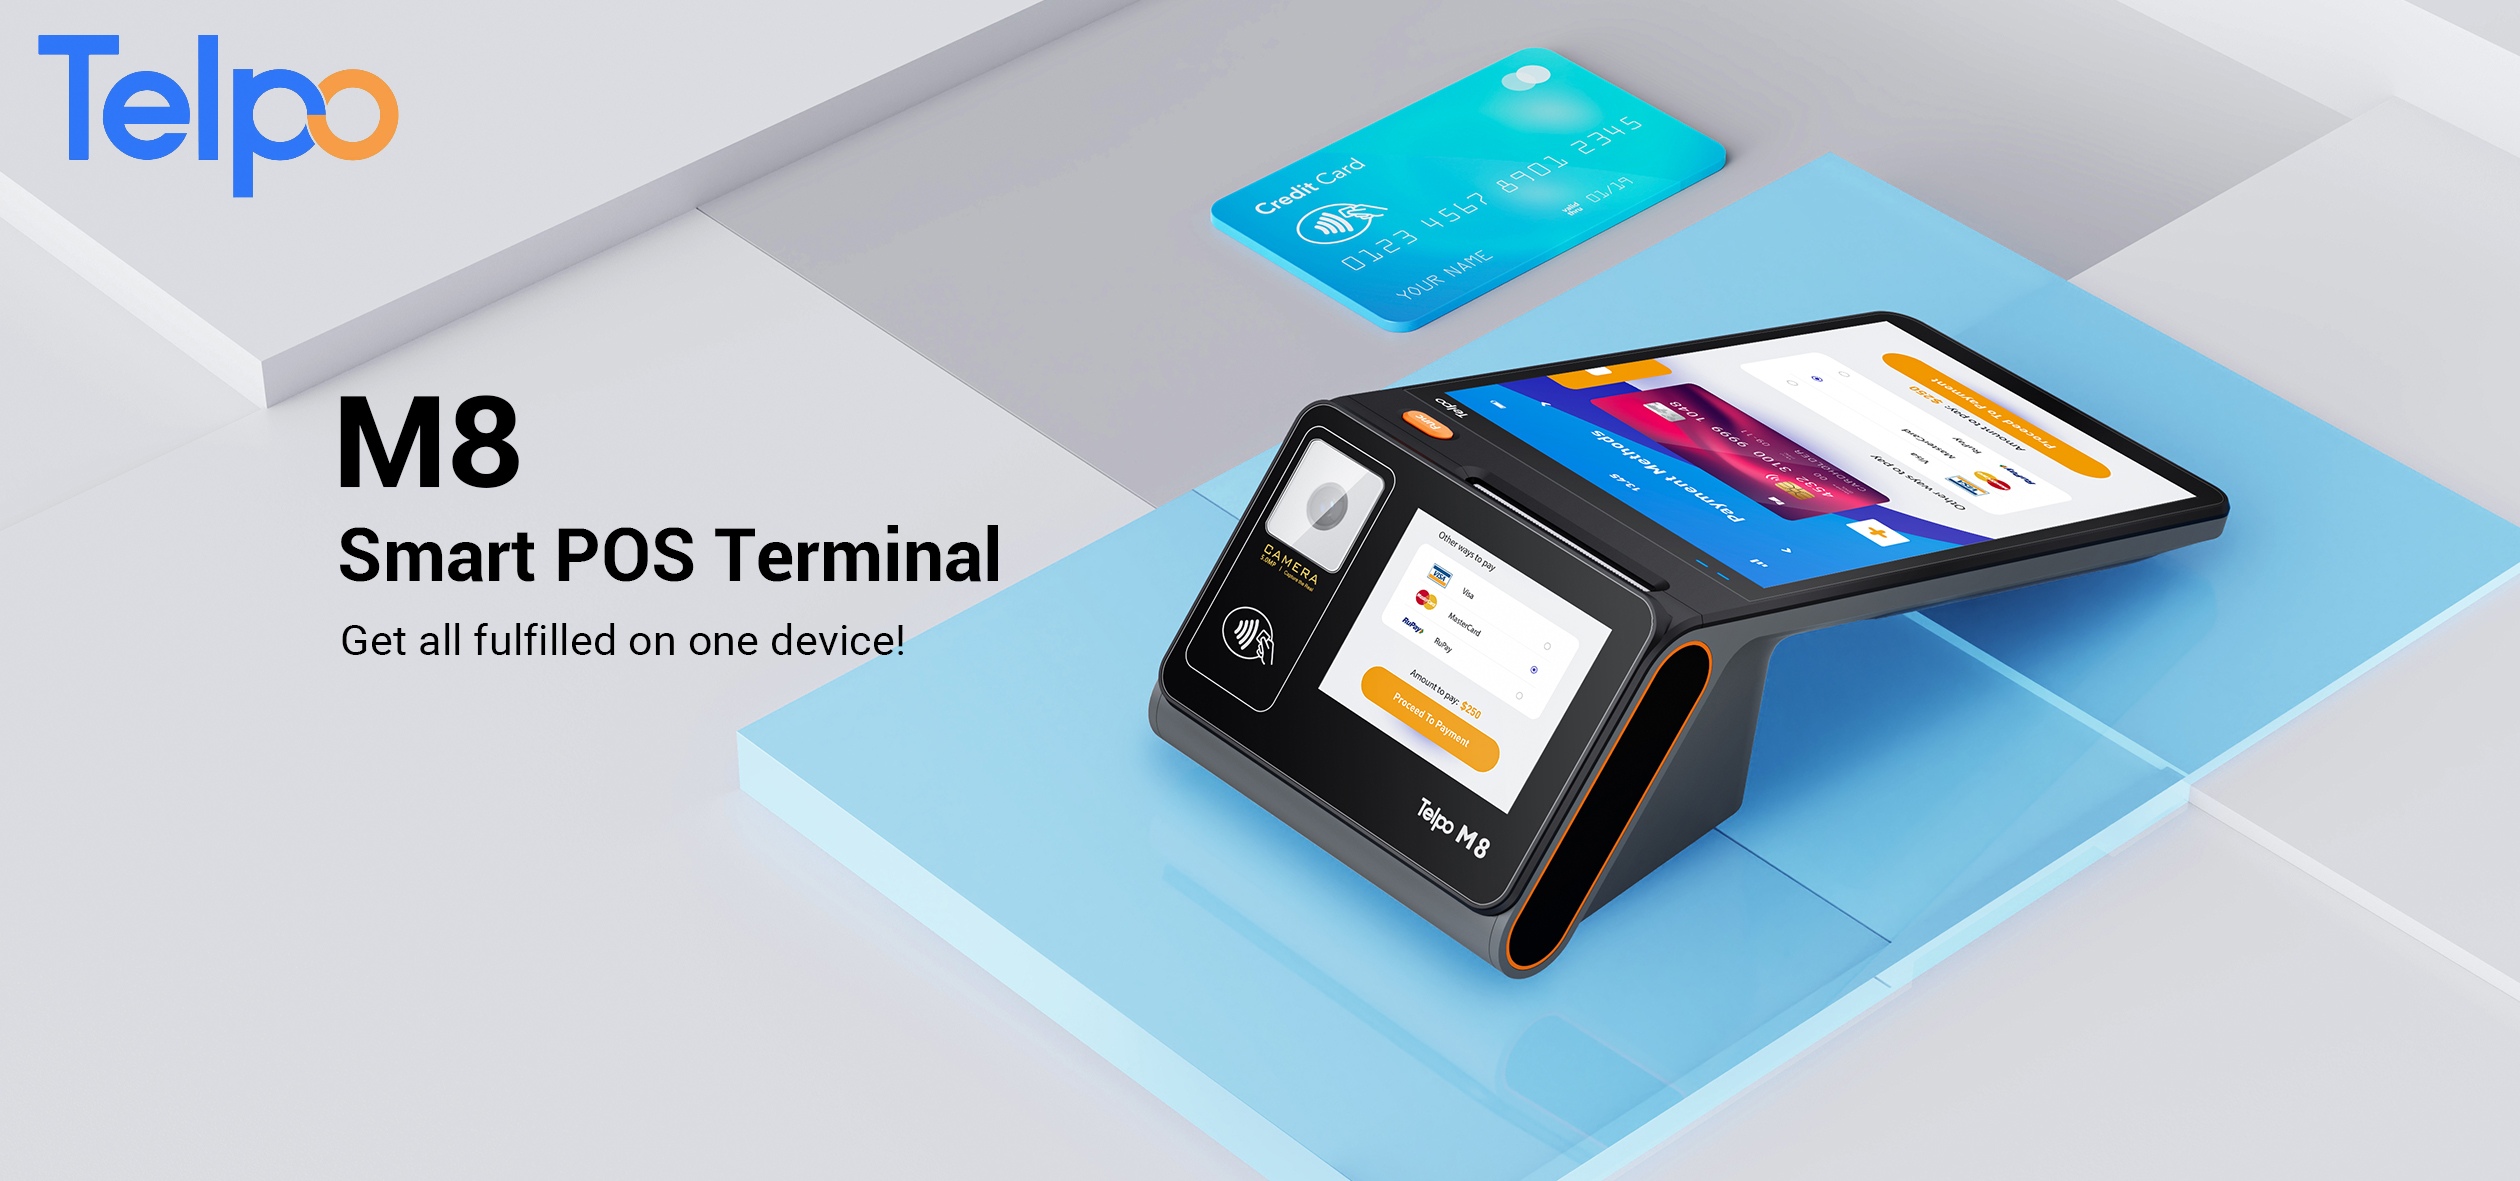 Telpo smart POS terminal M8